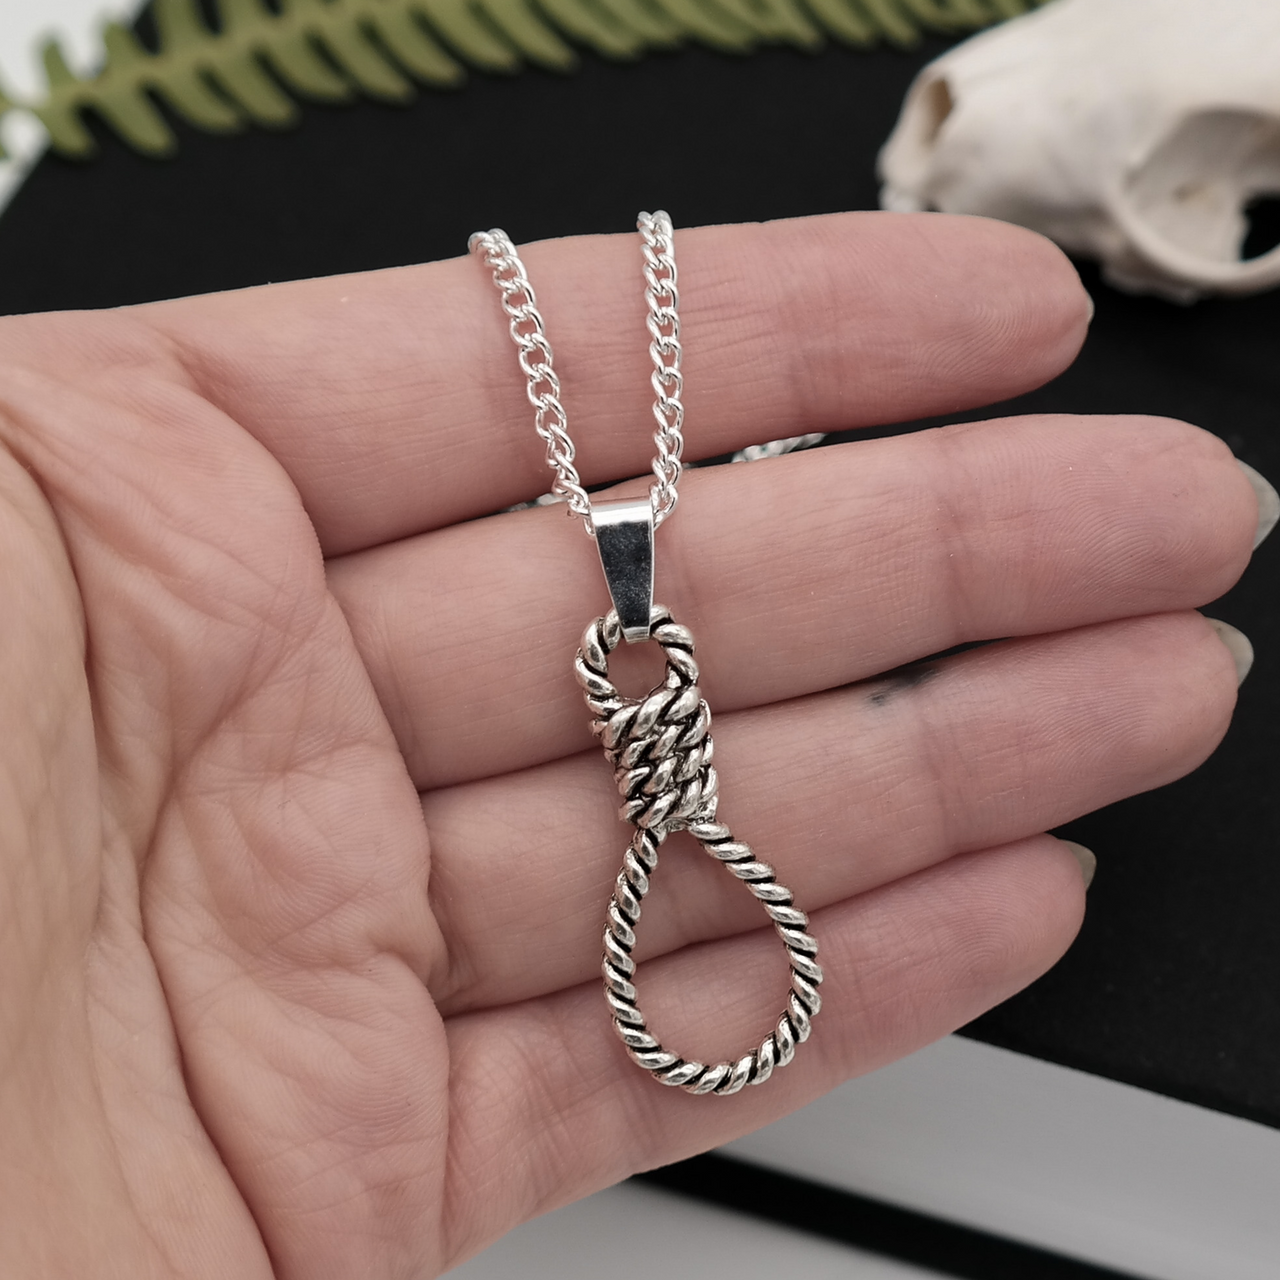 Silver Hangman’s Noose Necklace